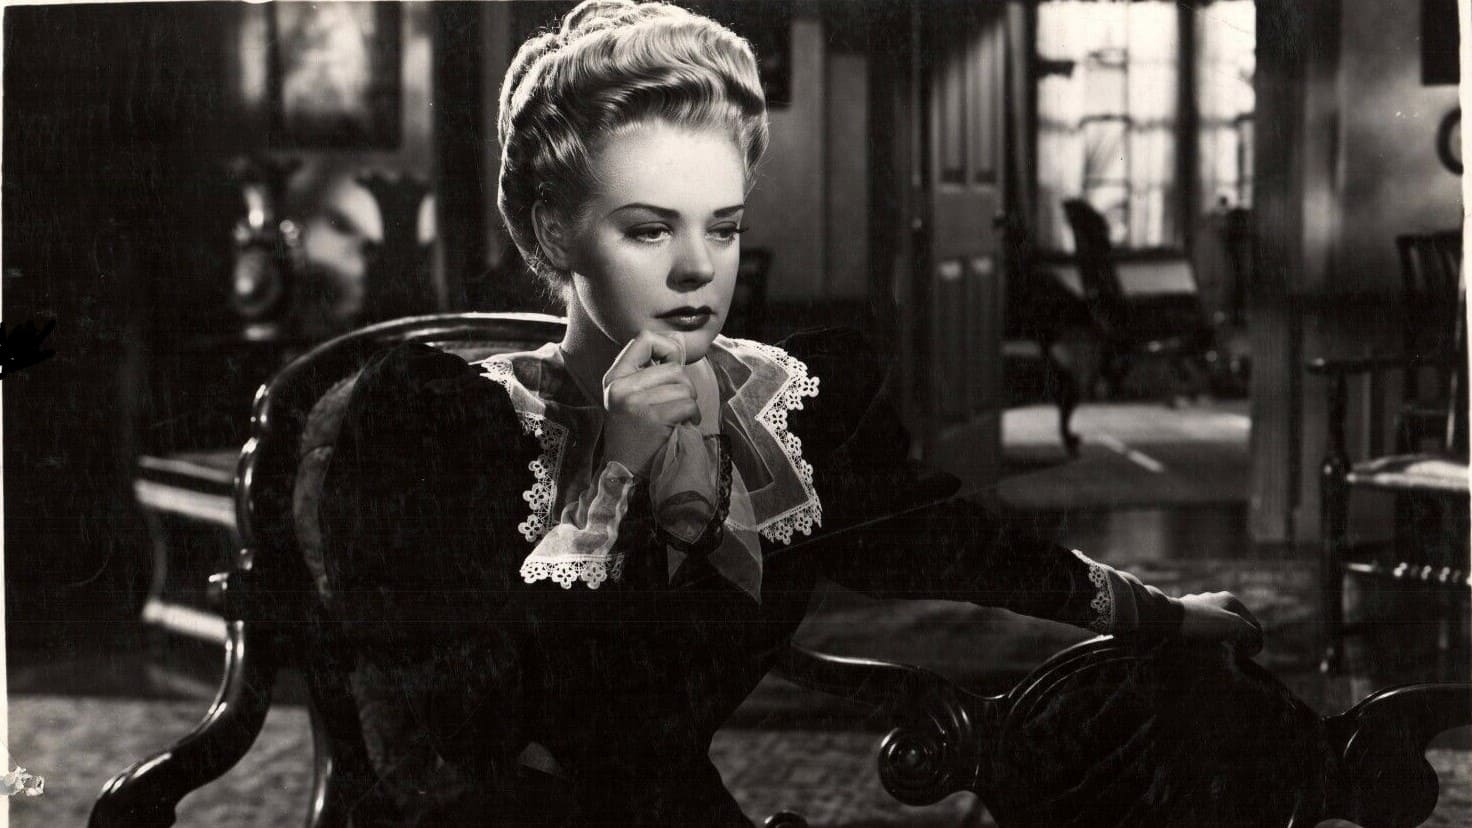 Lillian Russell (1940)